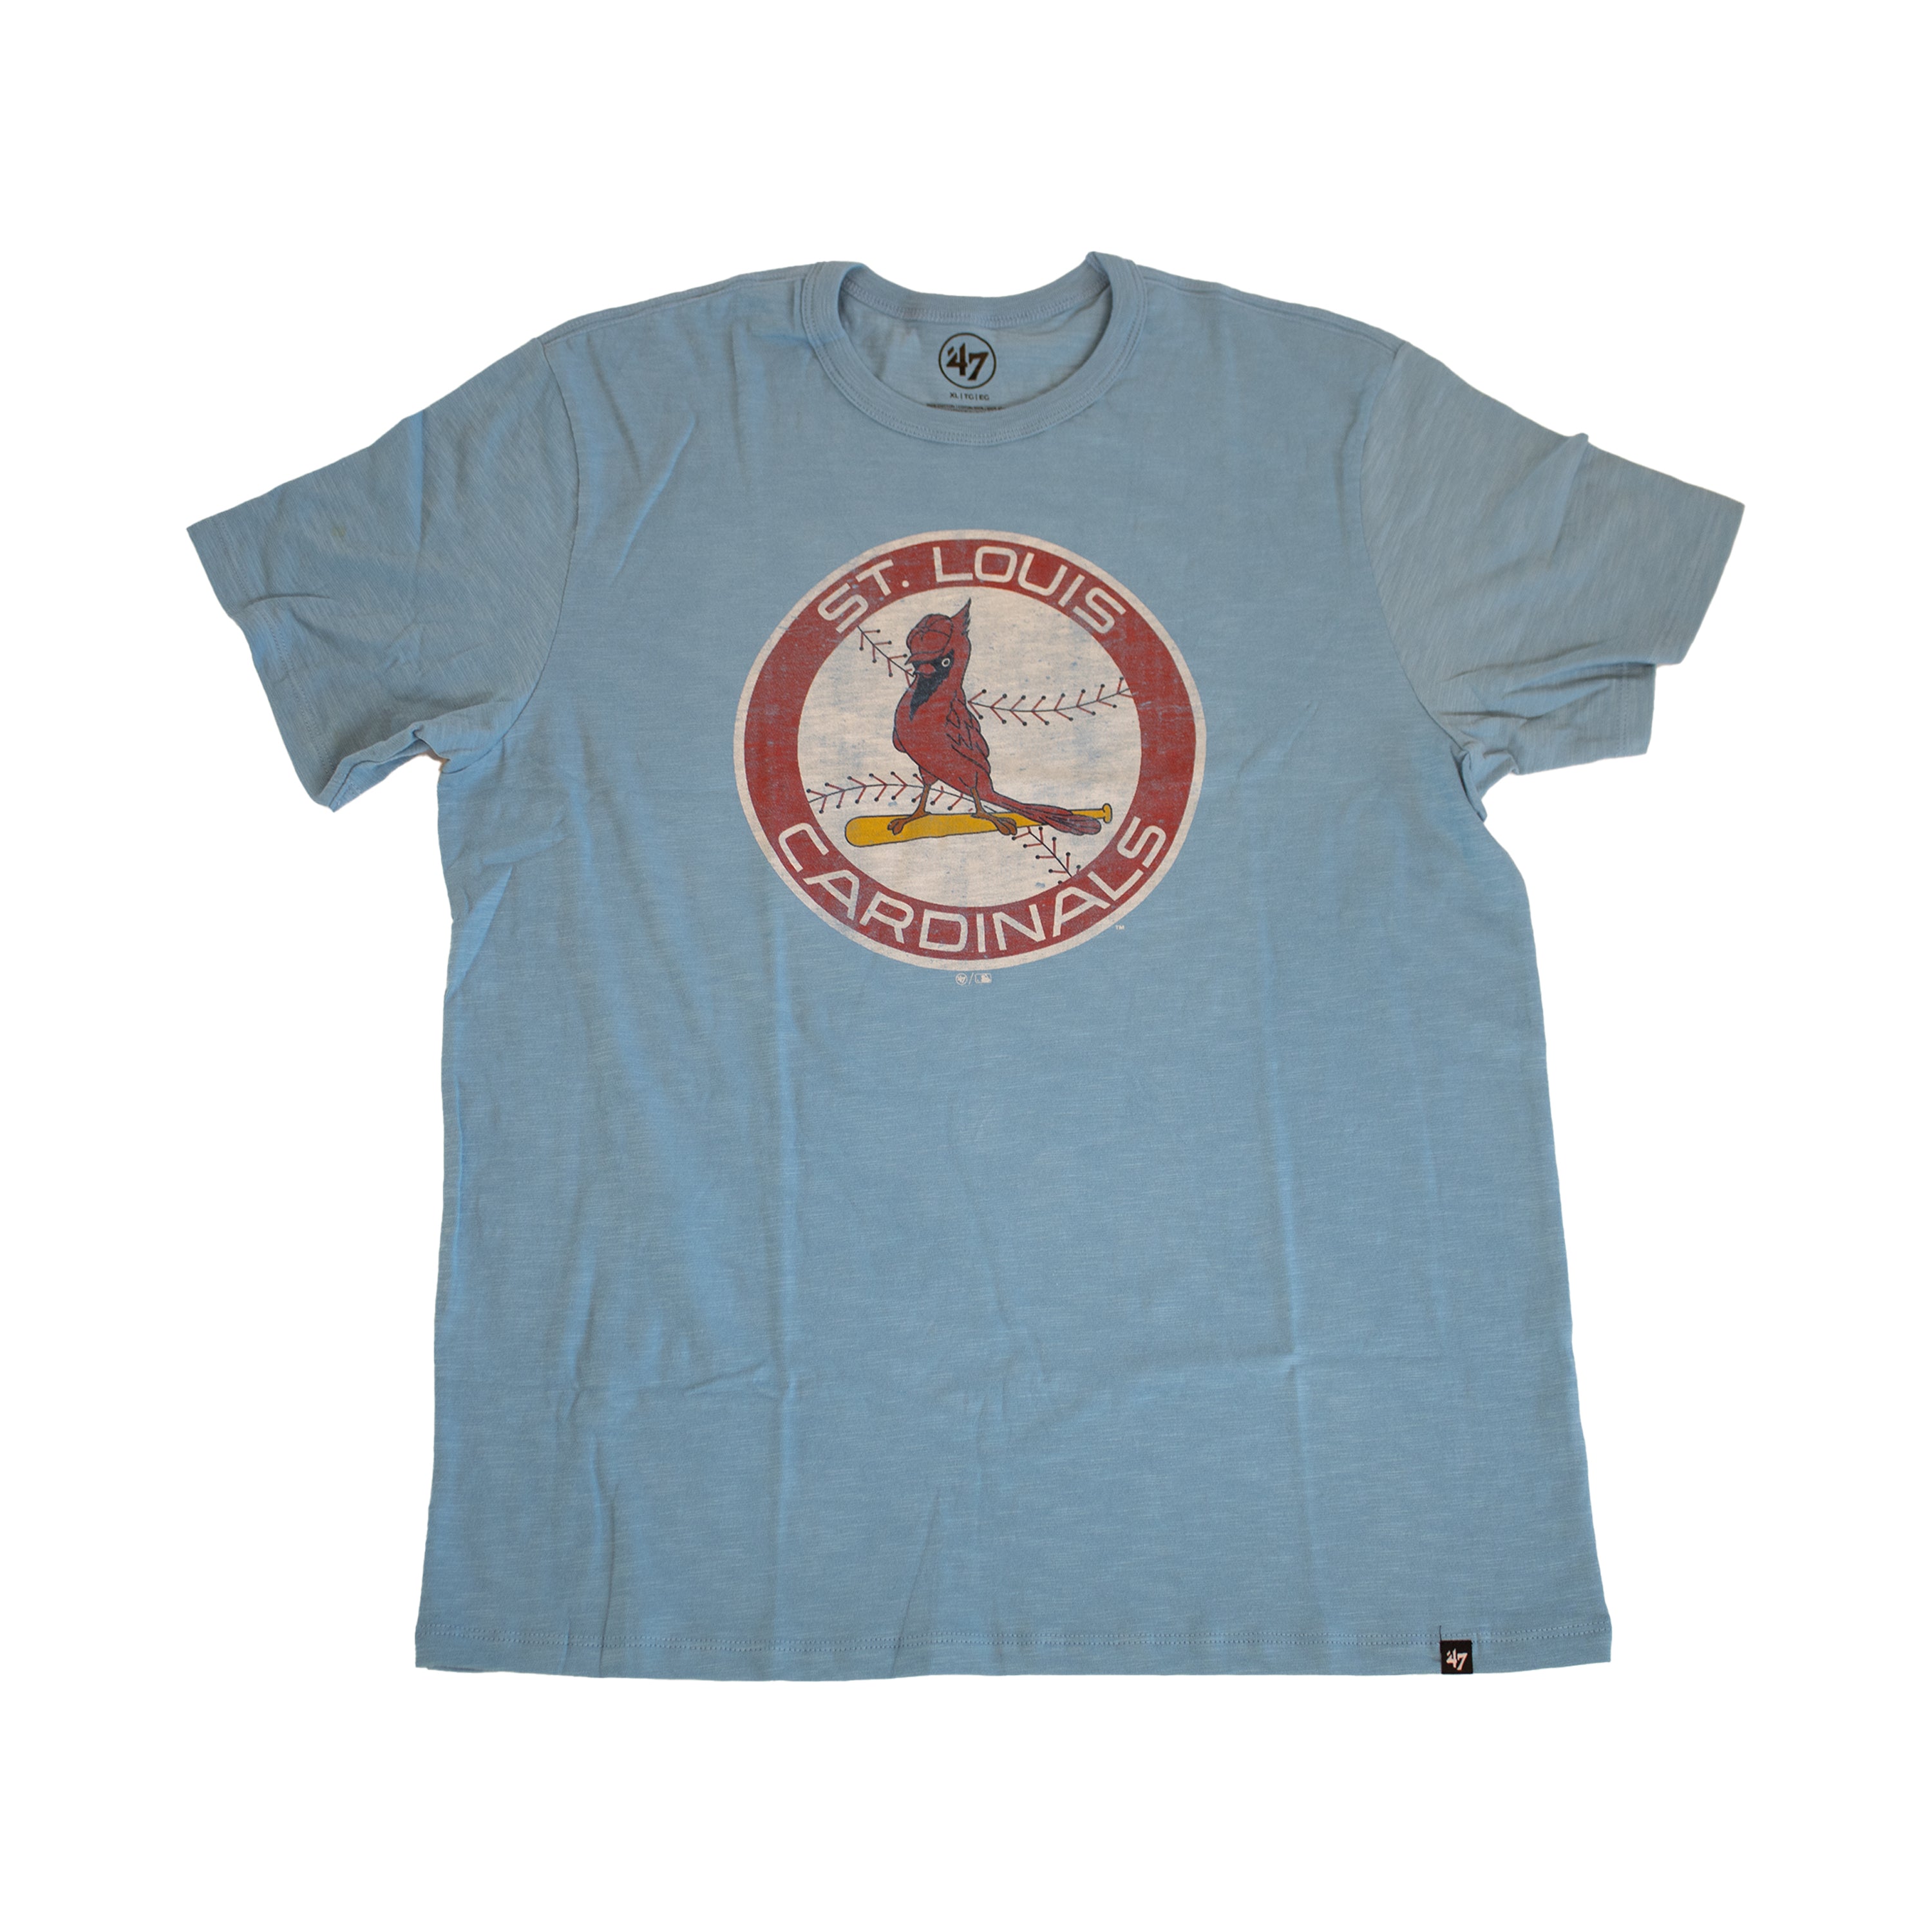 St. Louis Cardinals Baby Blue Carolina T-shirt – Peoria Chiefs